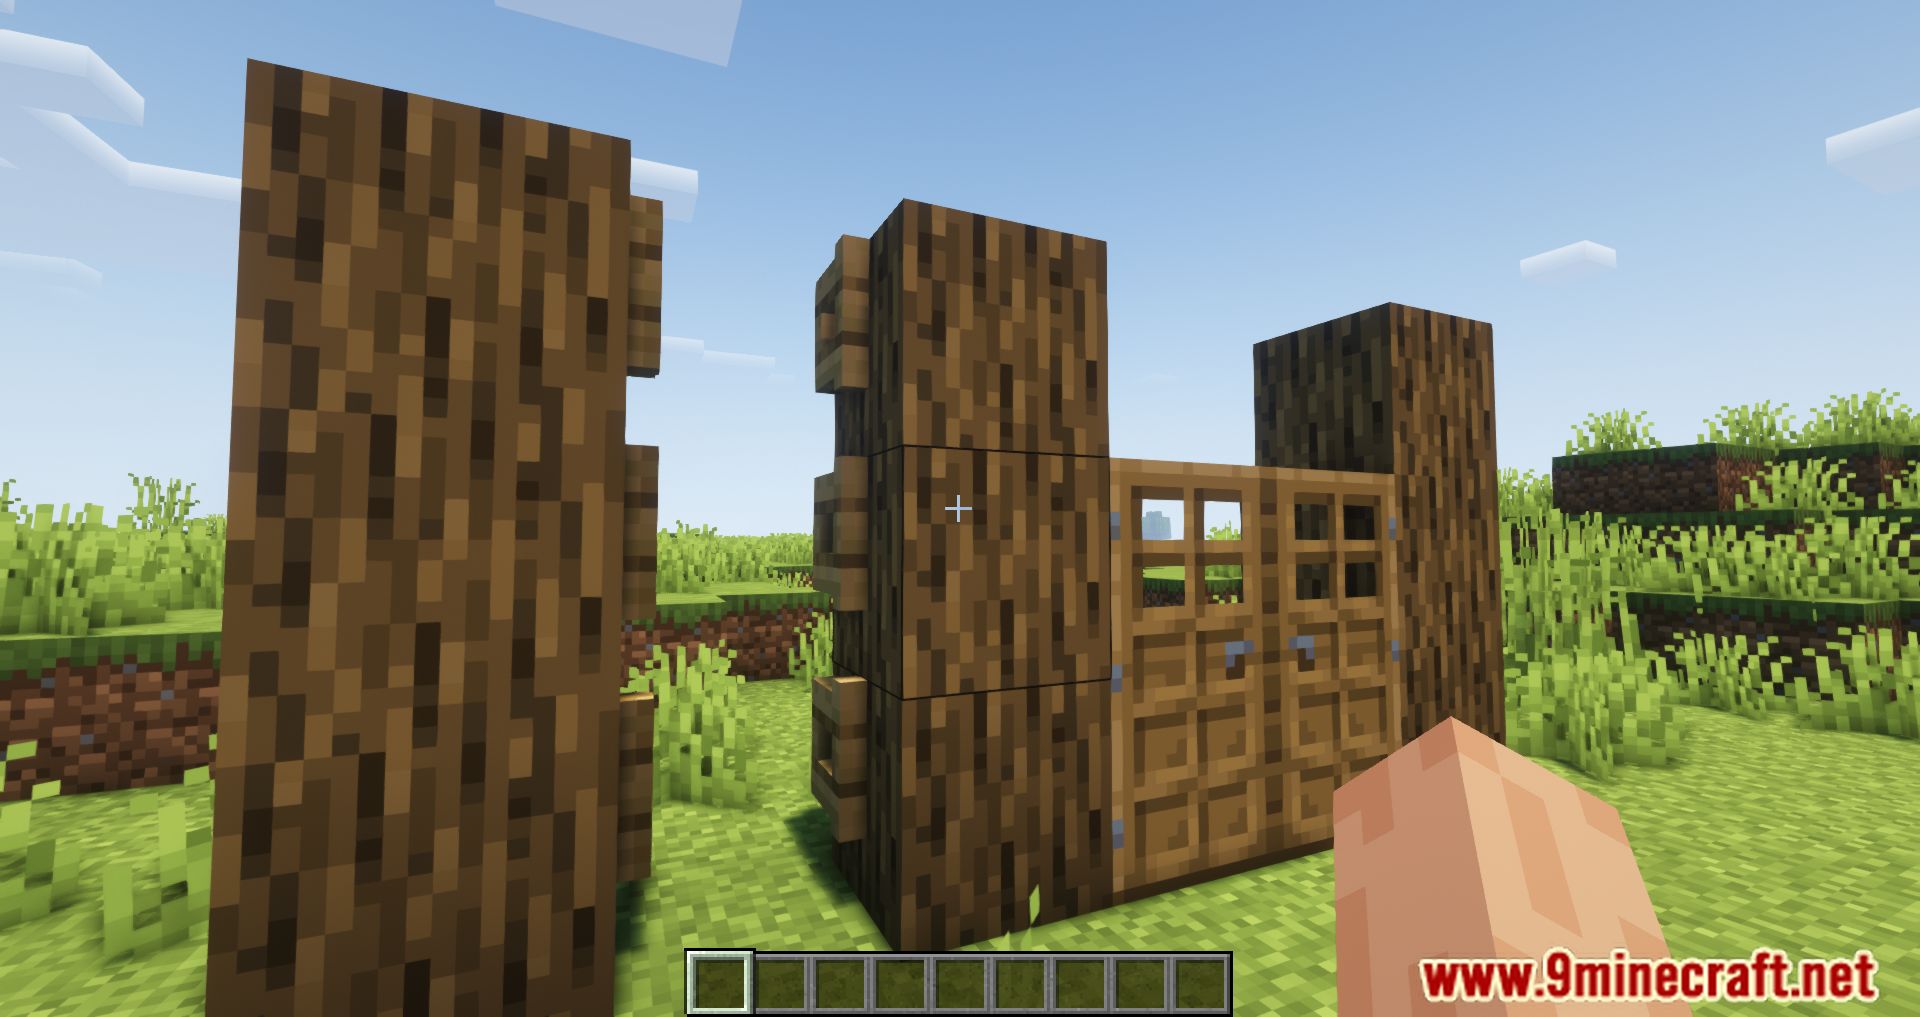 Door(s) Coupling Mod (1.16.5) - Enhancing Interactions In Minecraft 9